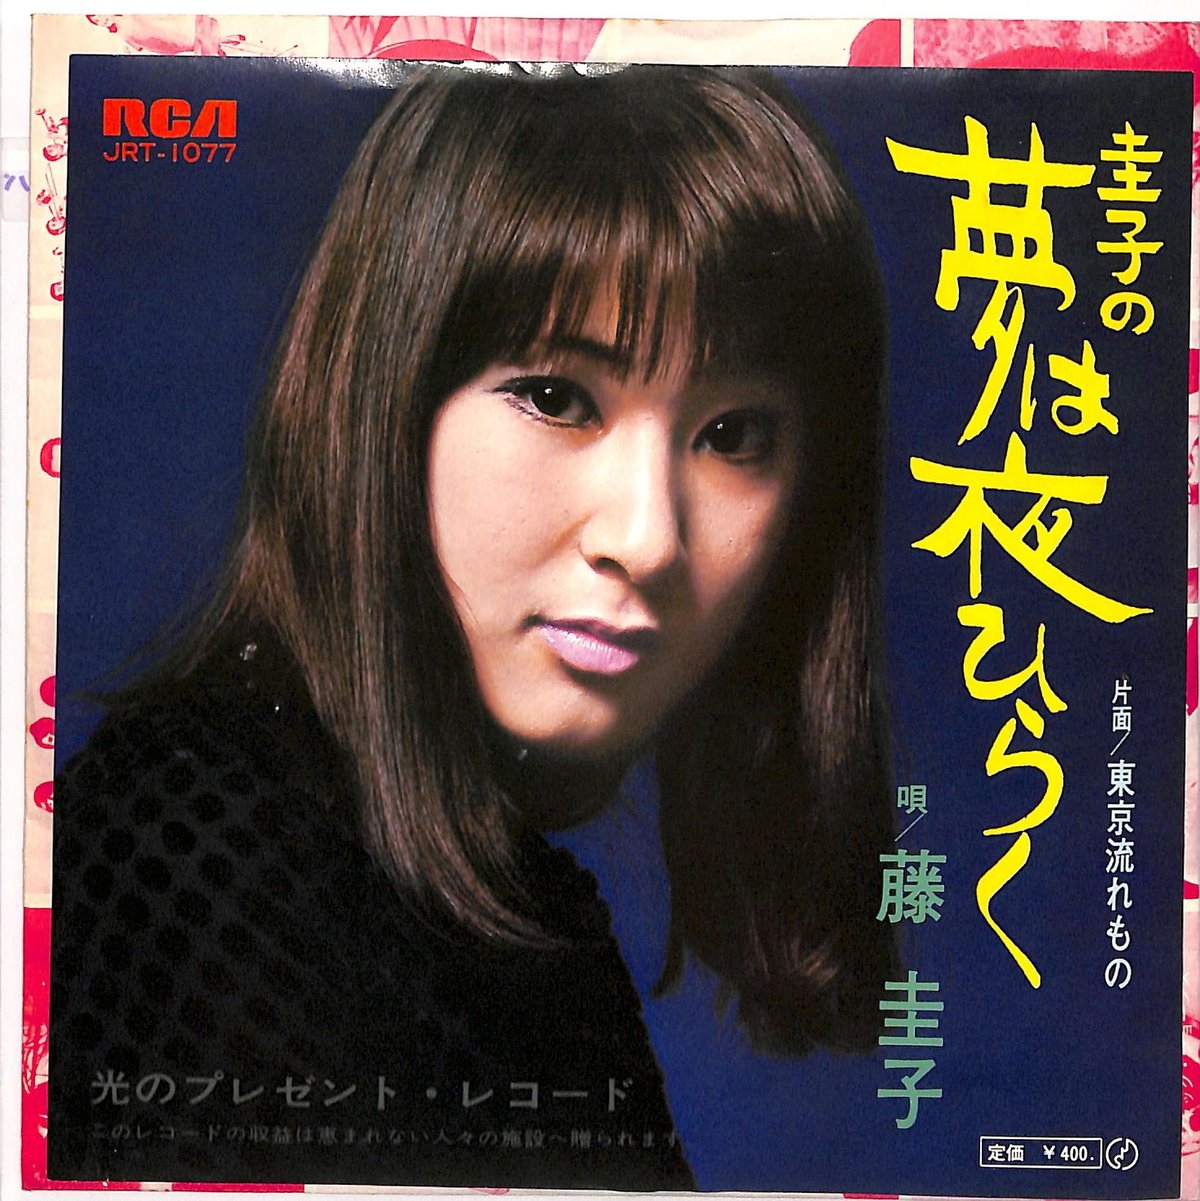 藤圭子、さん、レコード、ドナツ、45.レコード - 邦楽